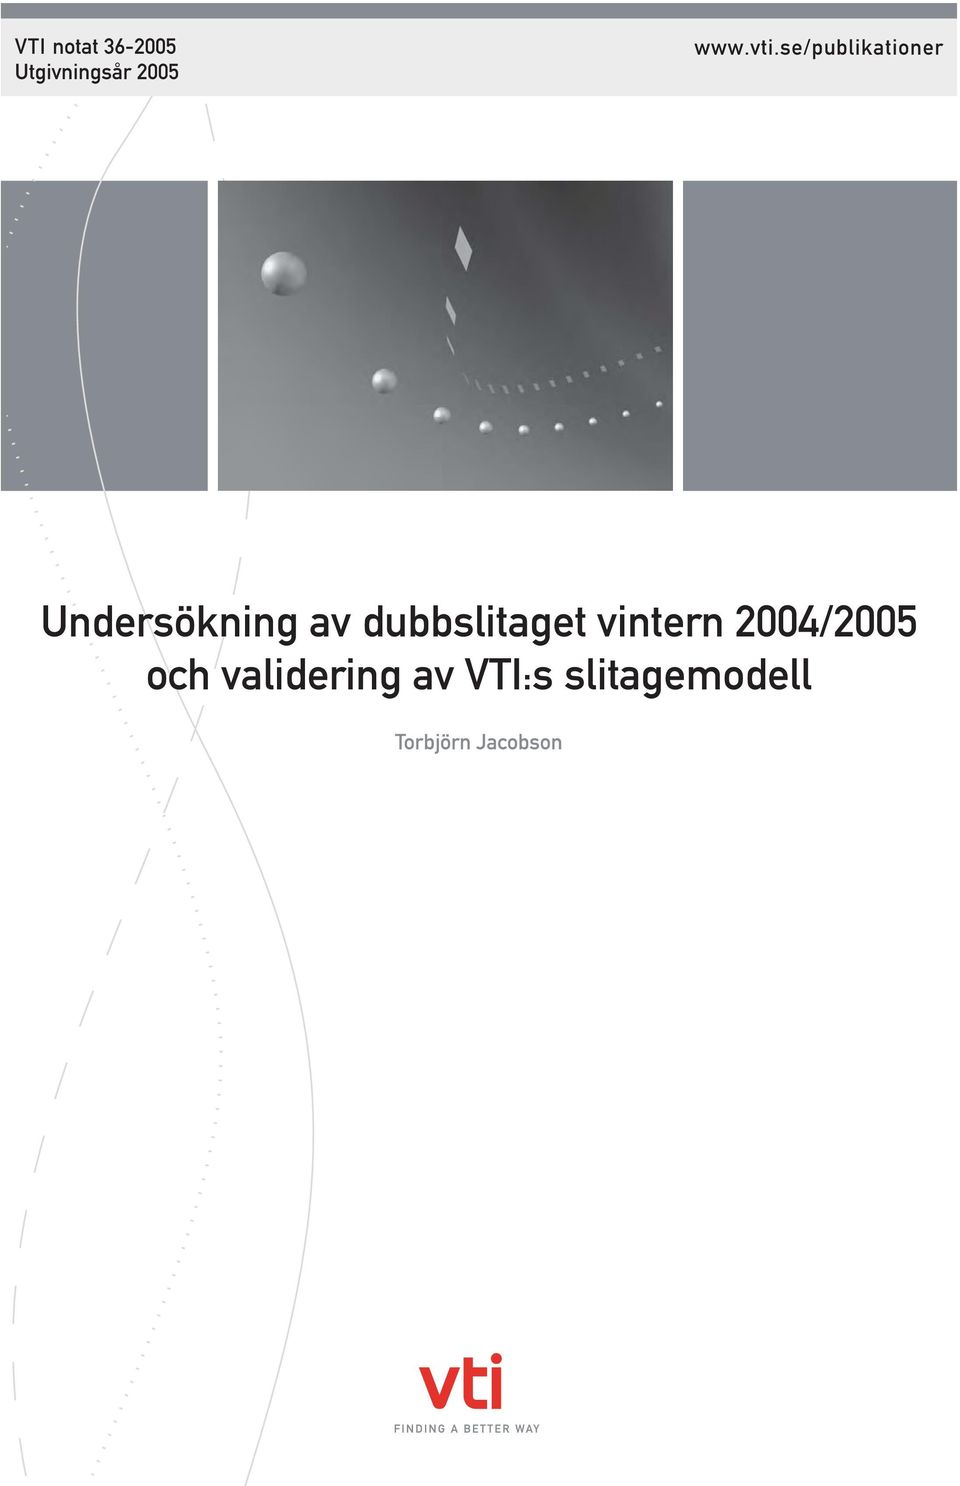 dubbslitaget vintern 2004/2005 och